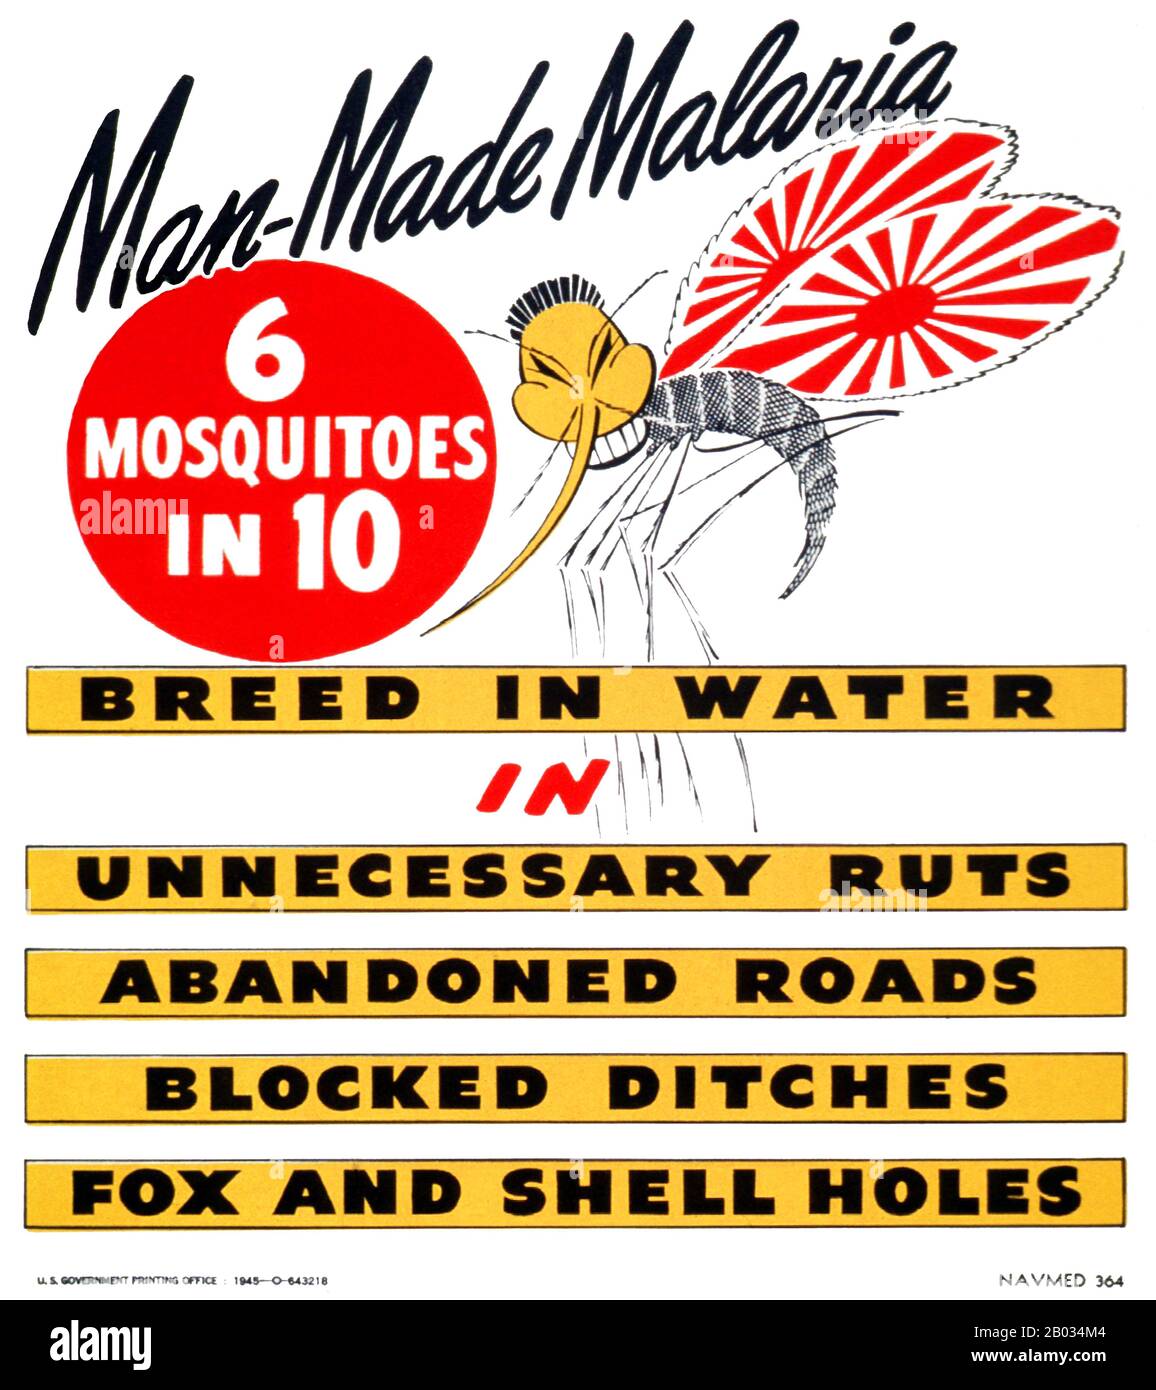 Propagandaplakat und Gesundheitsplakat des US Navy Bureau of Medicine and Surgery aus den Jahren 1944-45, das eine Anti-Malarial-Kampagne mit Hilfe einer Mücke mit "japanischen" Merkmalen und Flügeln der Kaiserlich japanischen Marine propagiert. Stockfoto